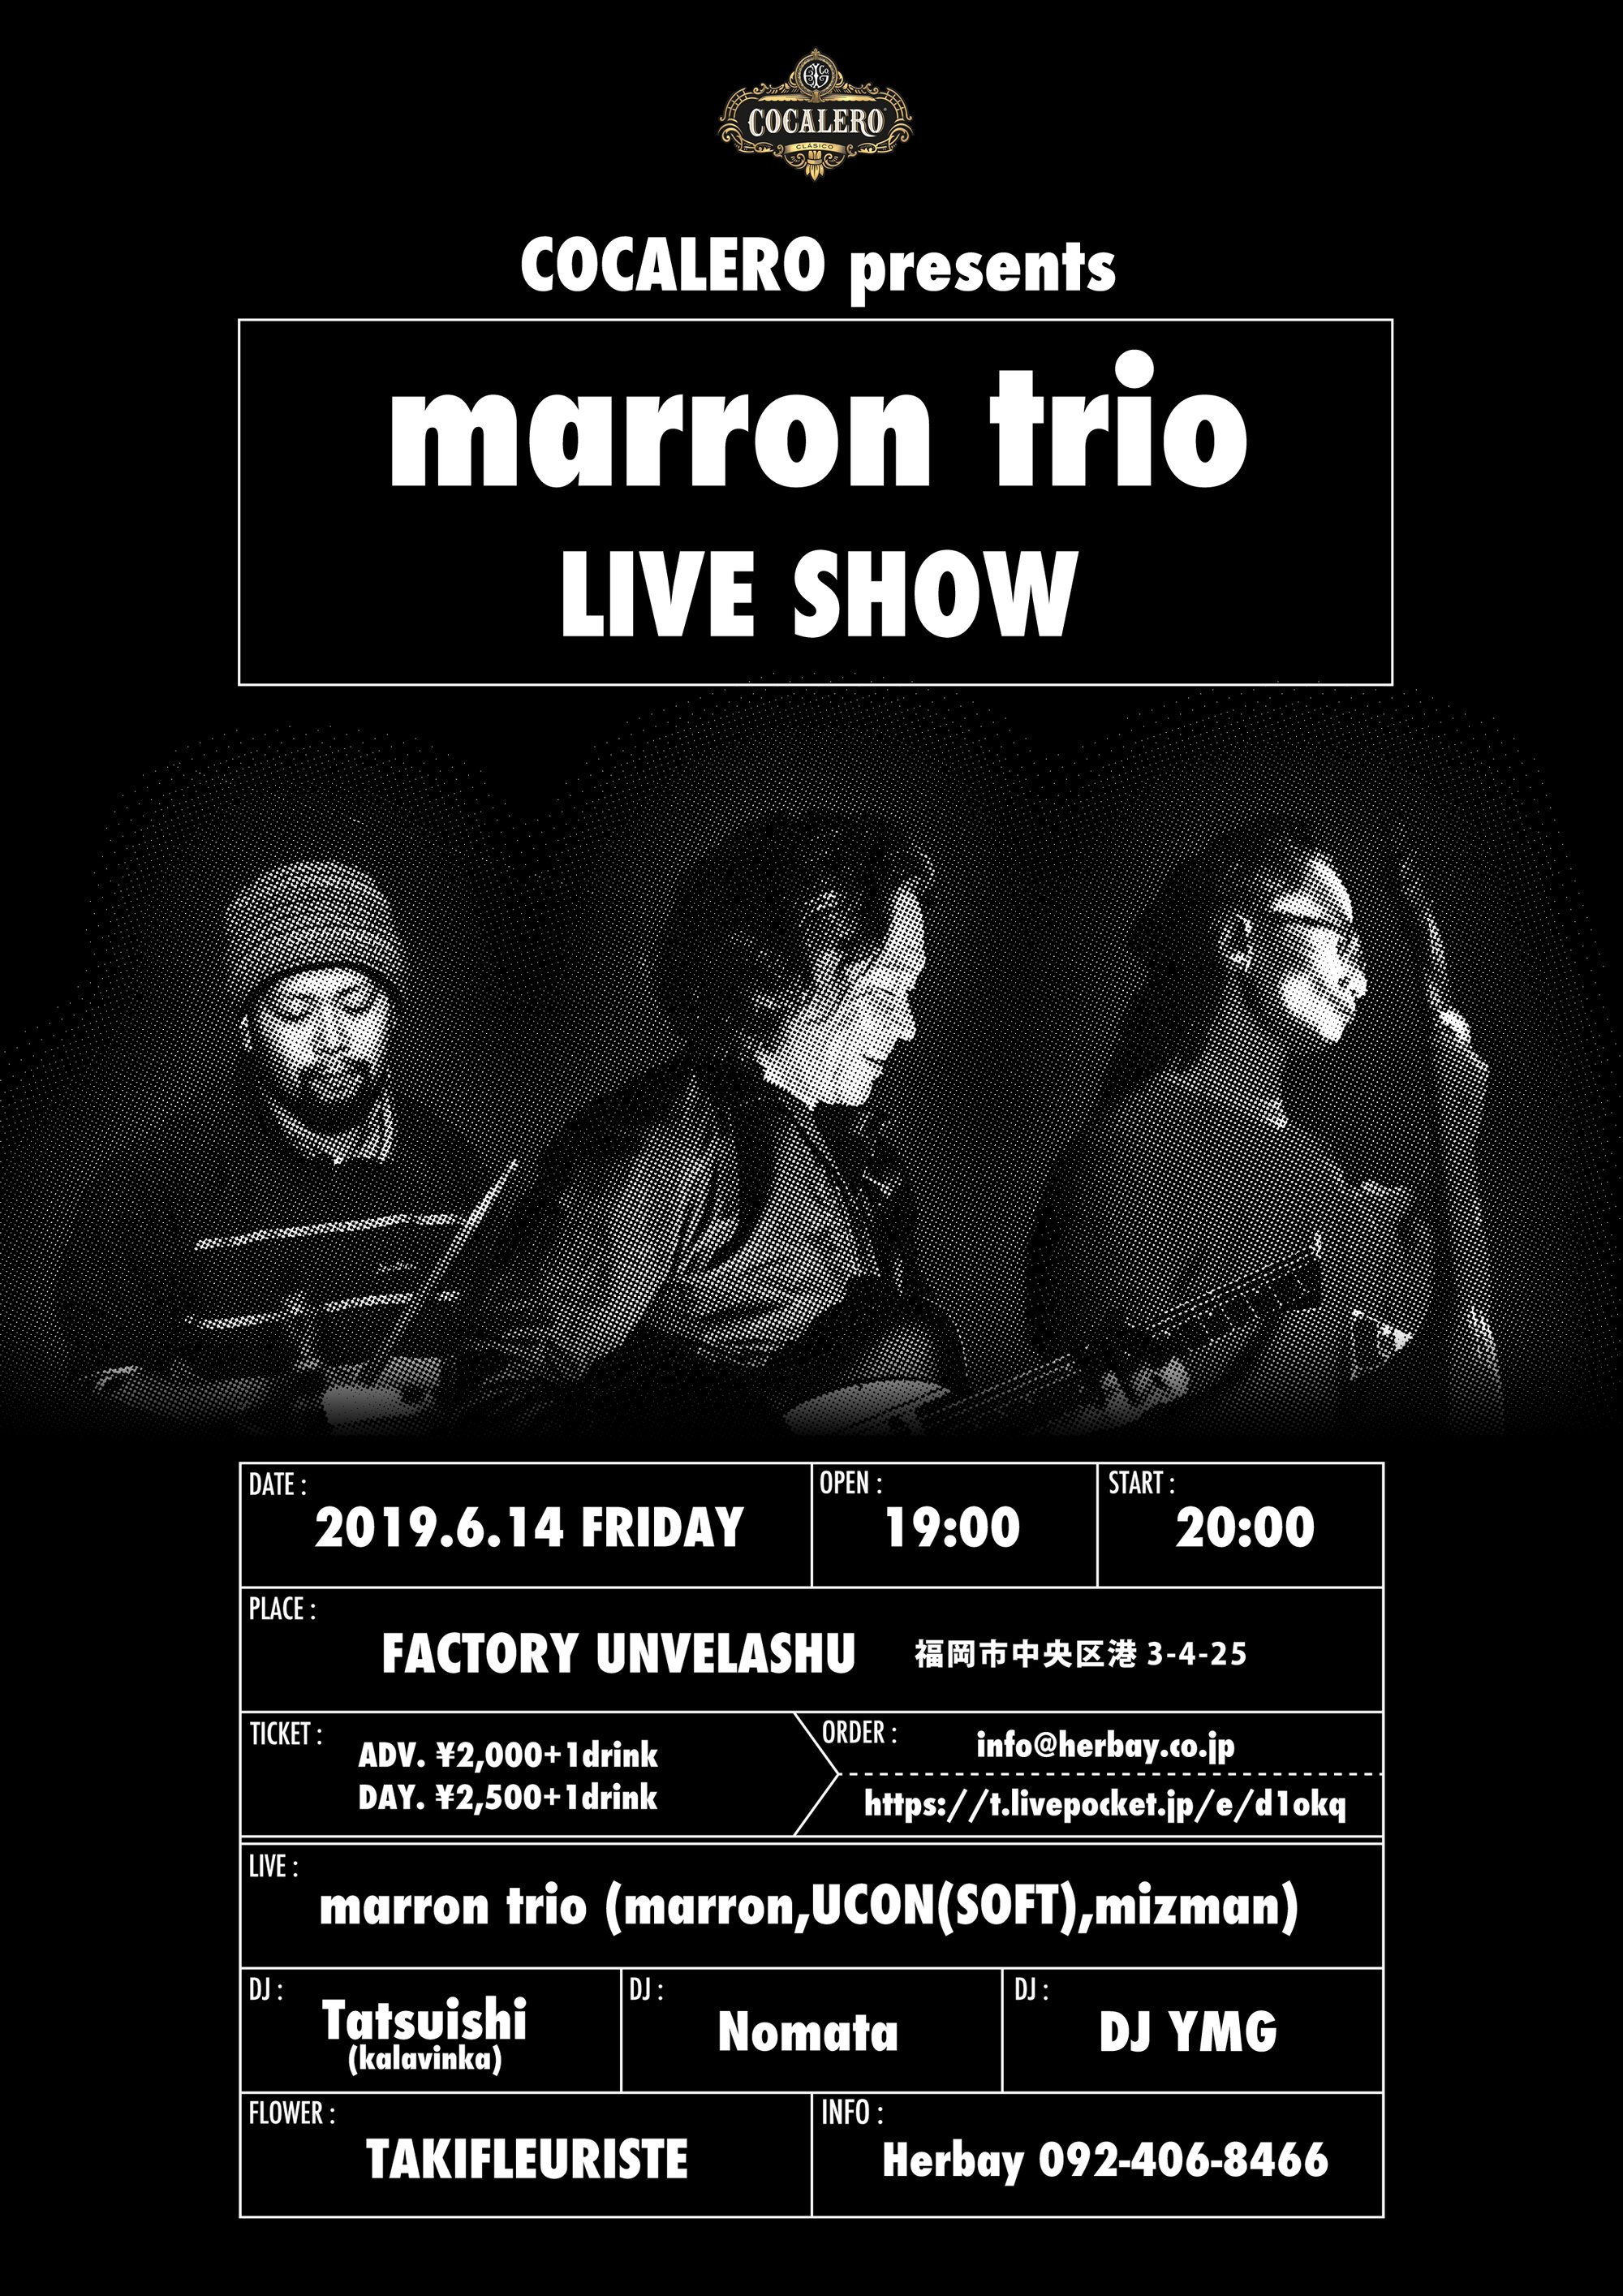 COCALERO presents marron trio LIVE SHOW